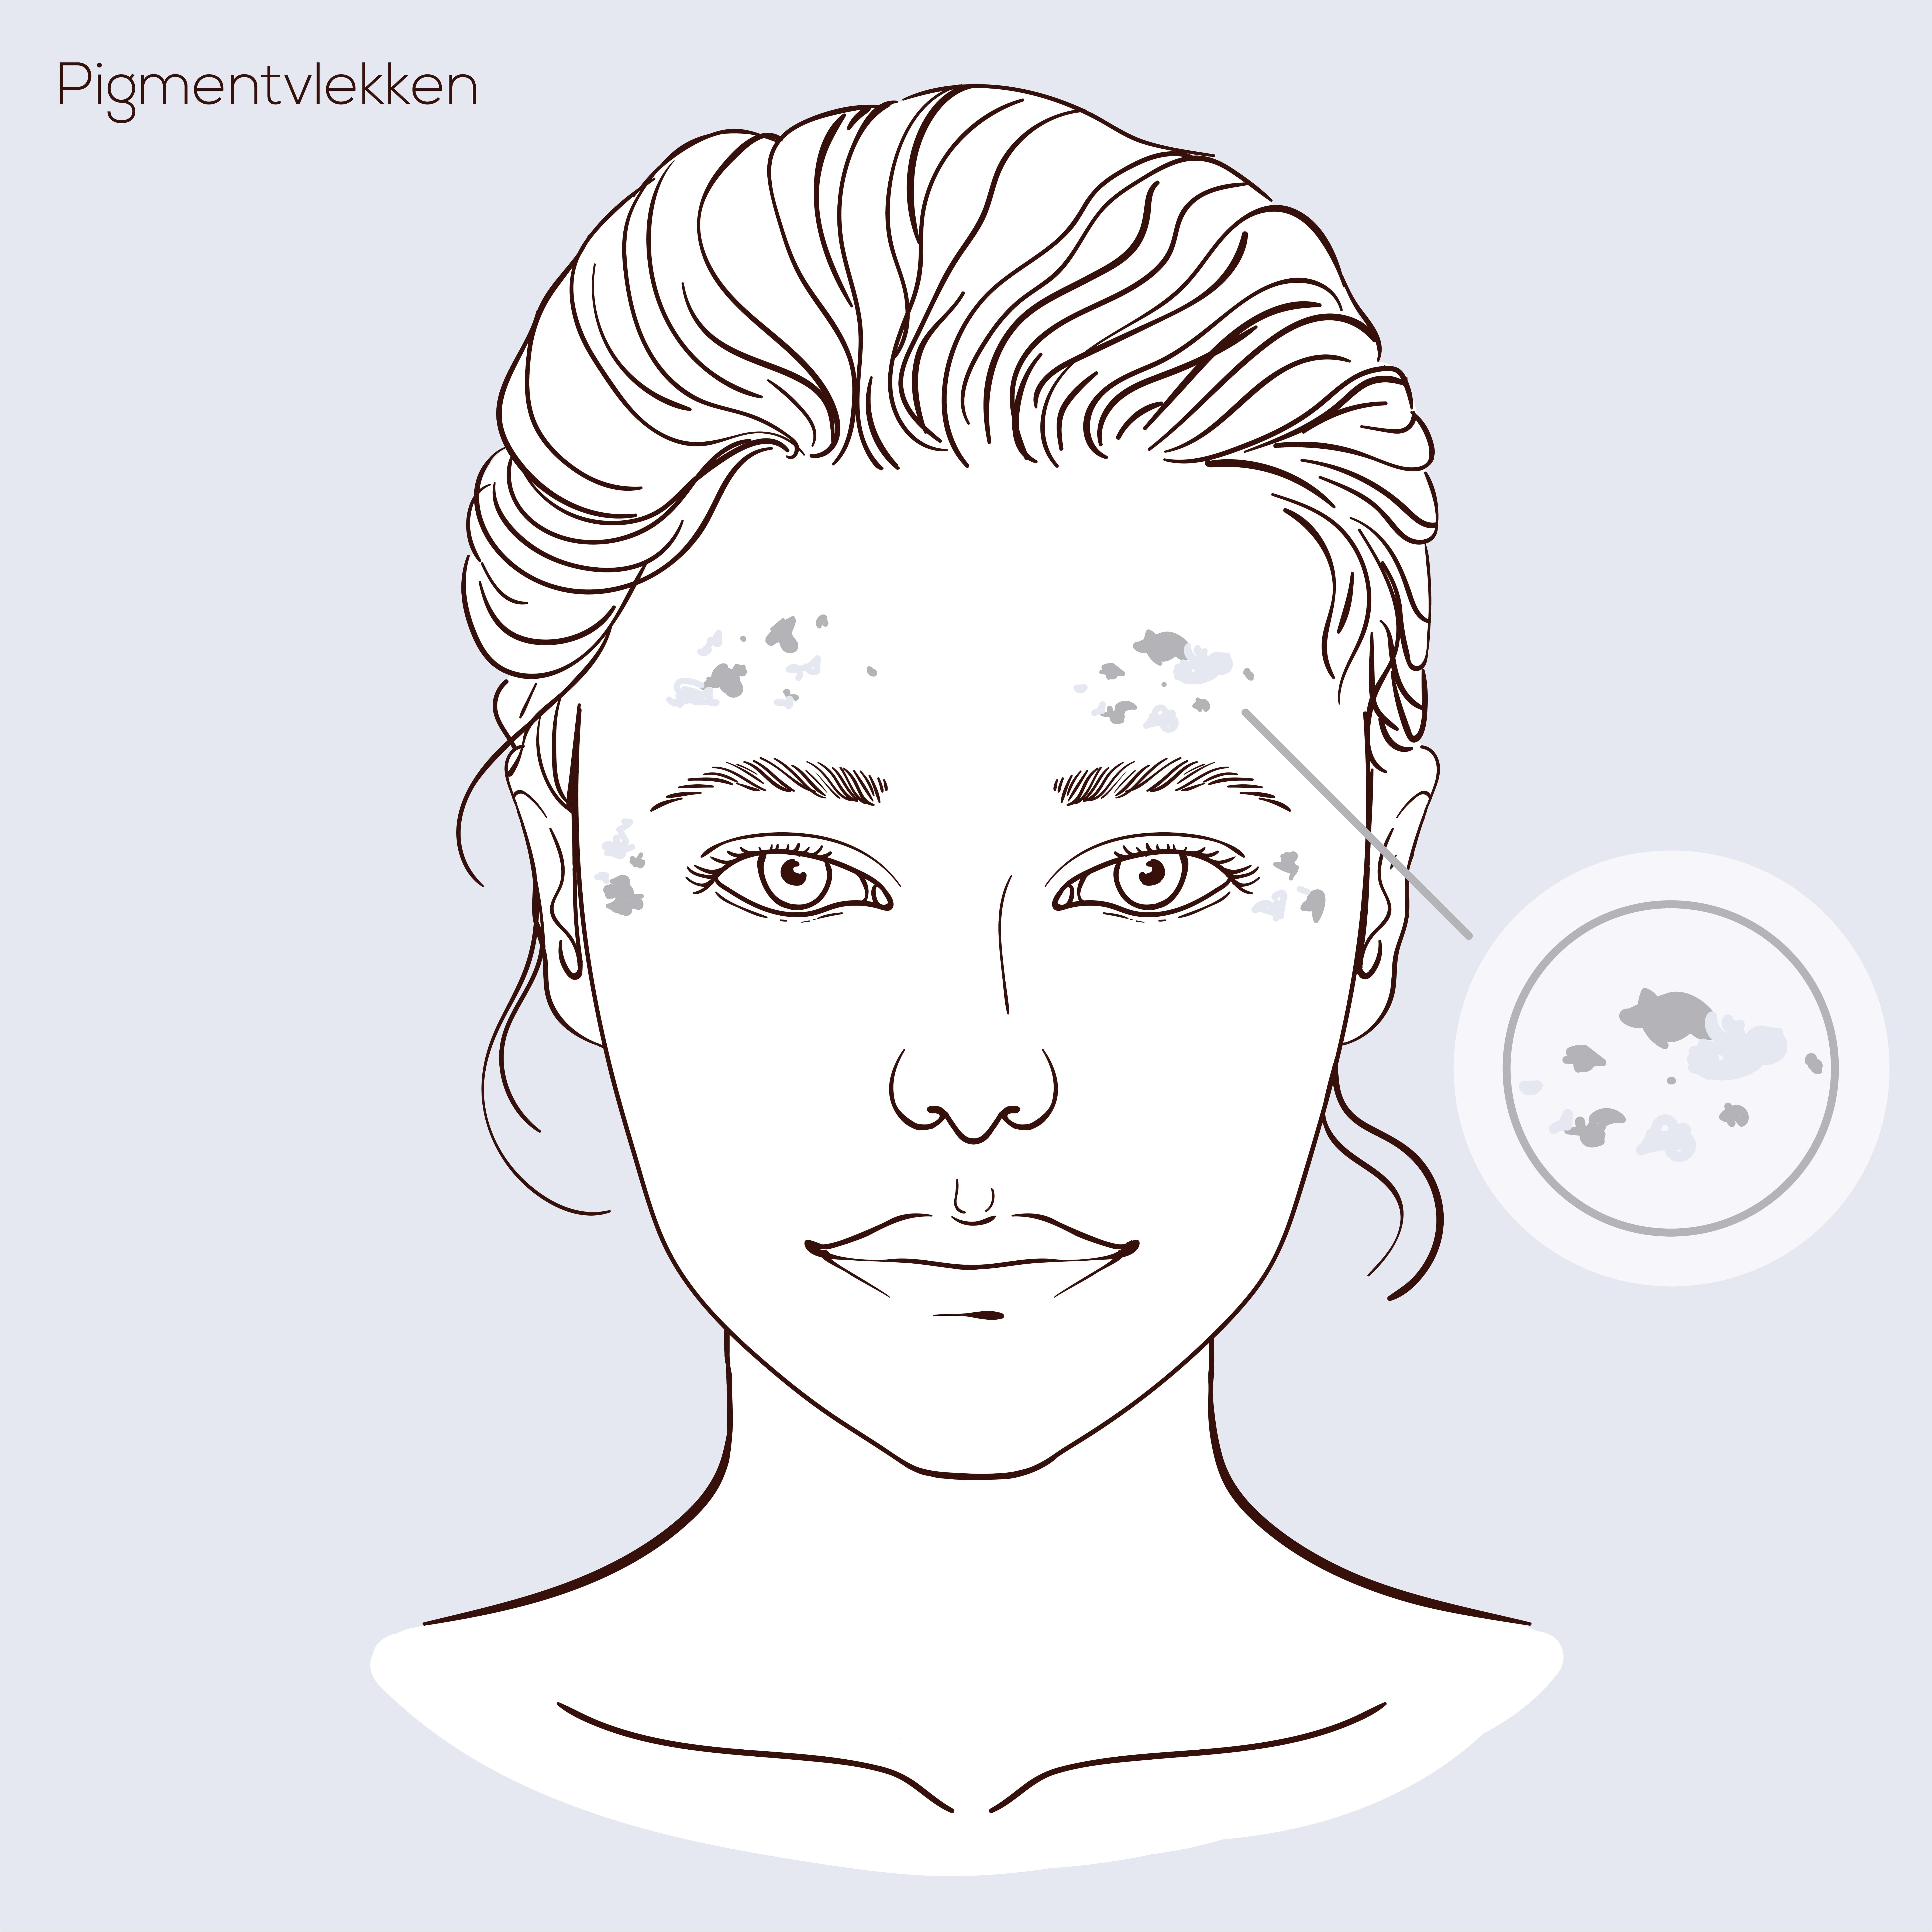 Illustratie van gezicht met huidprobleem pigmentvlekken